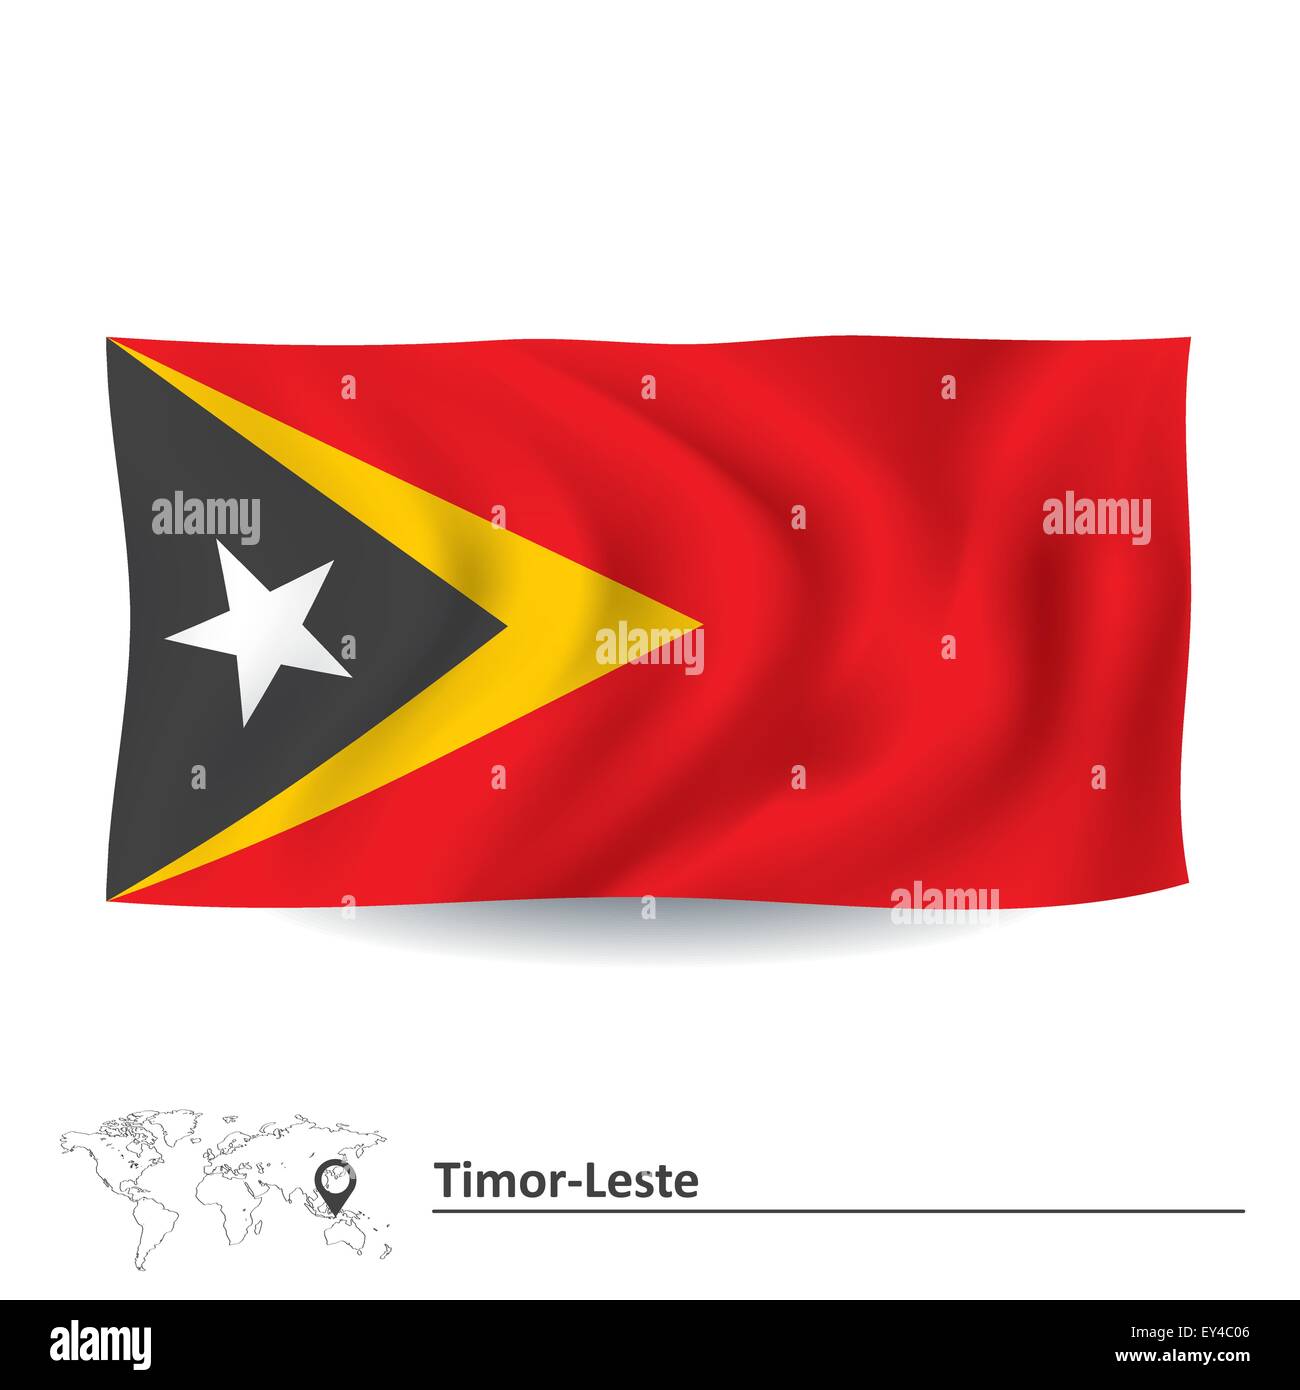 Flag of Timor-Leste - vector illustration Stock Vector